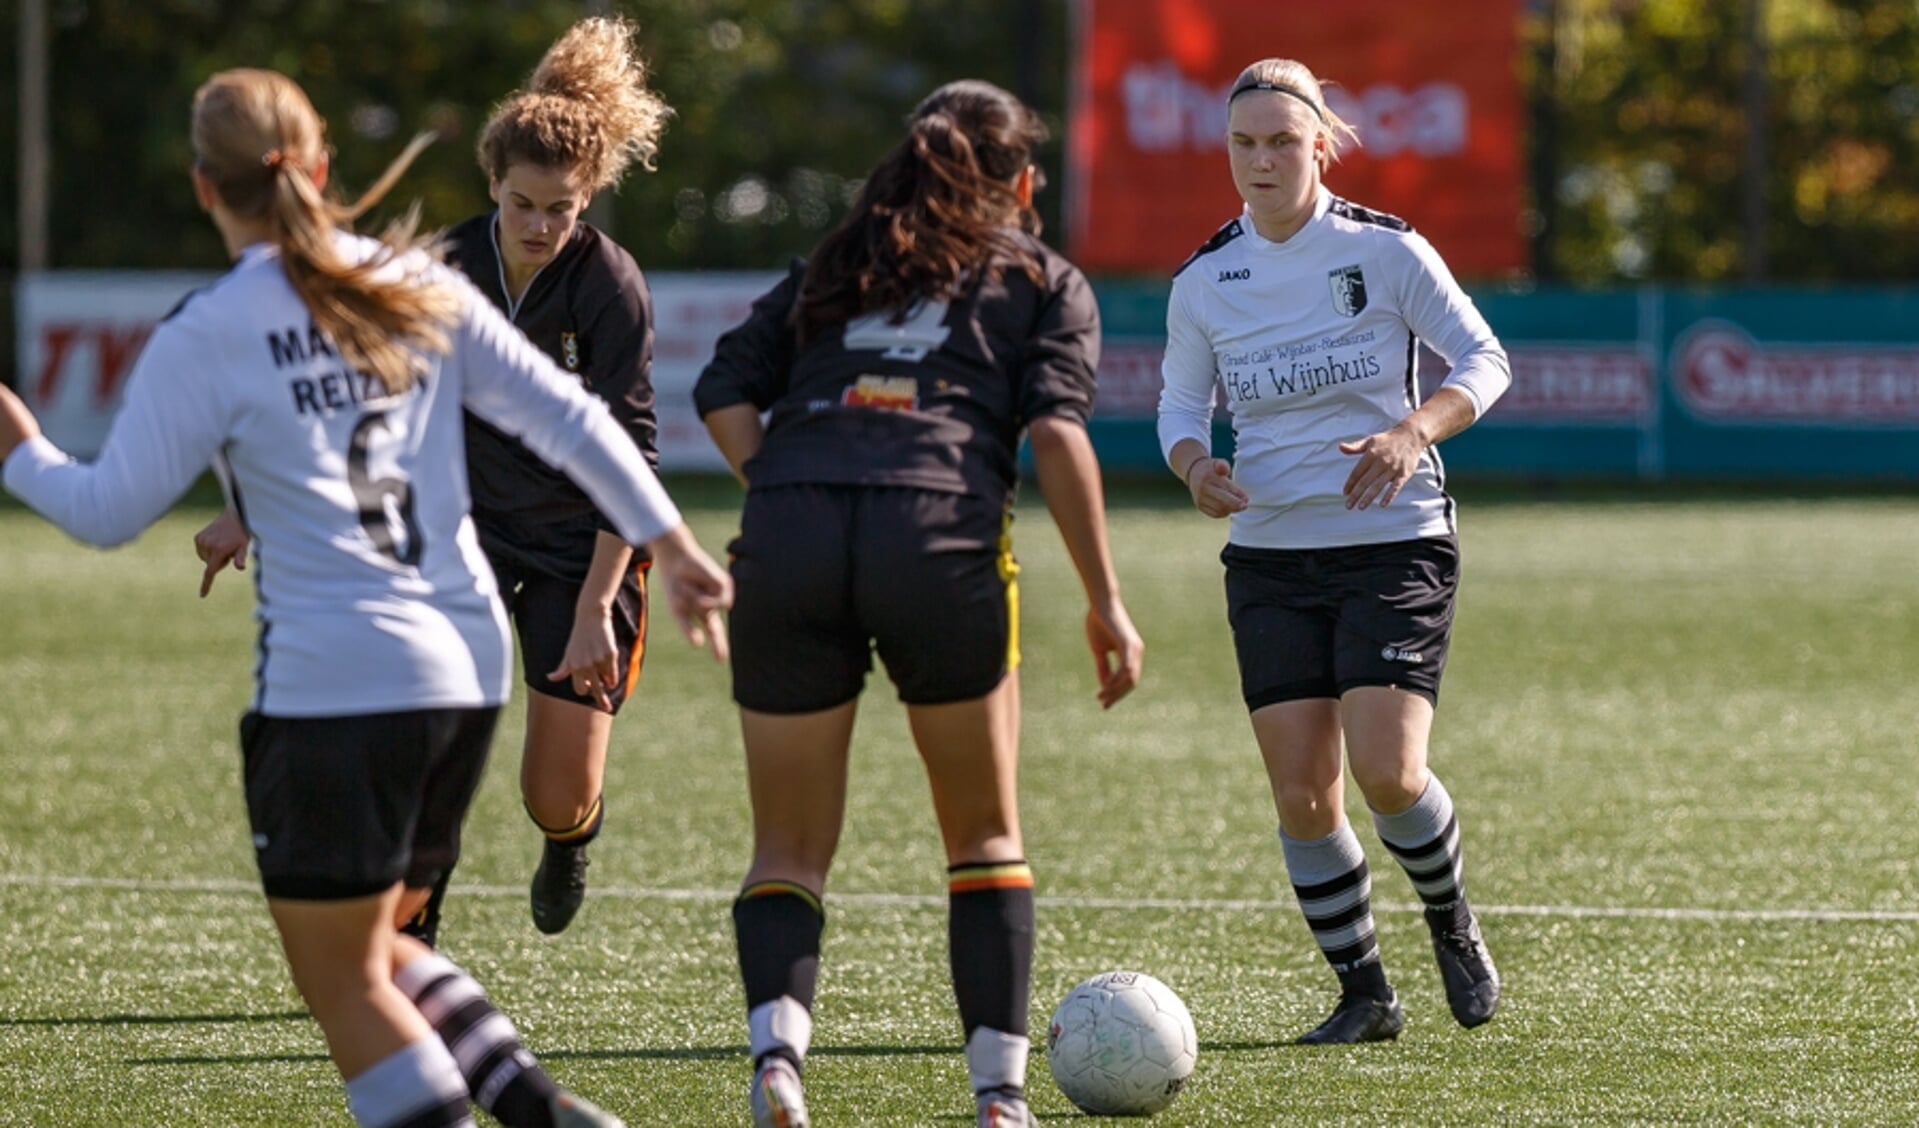  Berkum Vrouwen speelde zaterdag 2-2 tegen Stiens in de eerste wedstrijd op hoofdklasse-niveau.